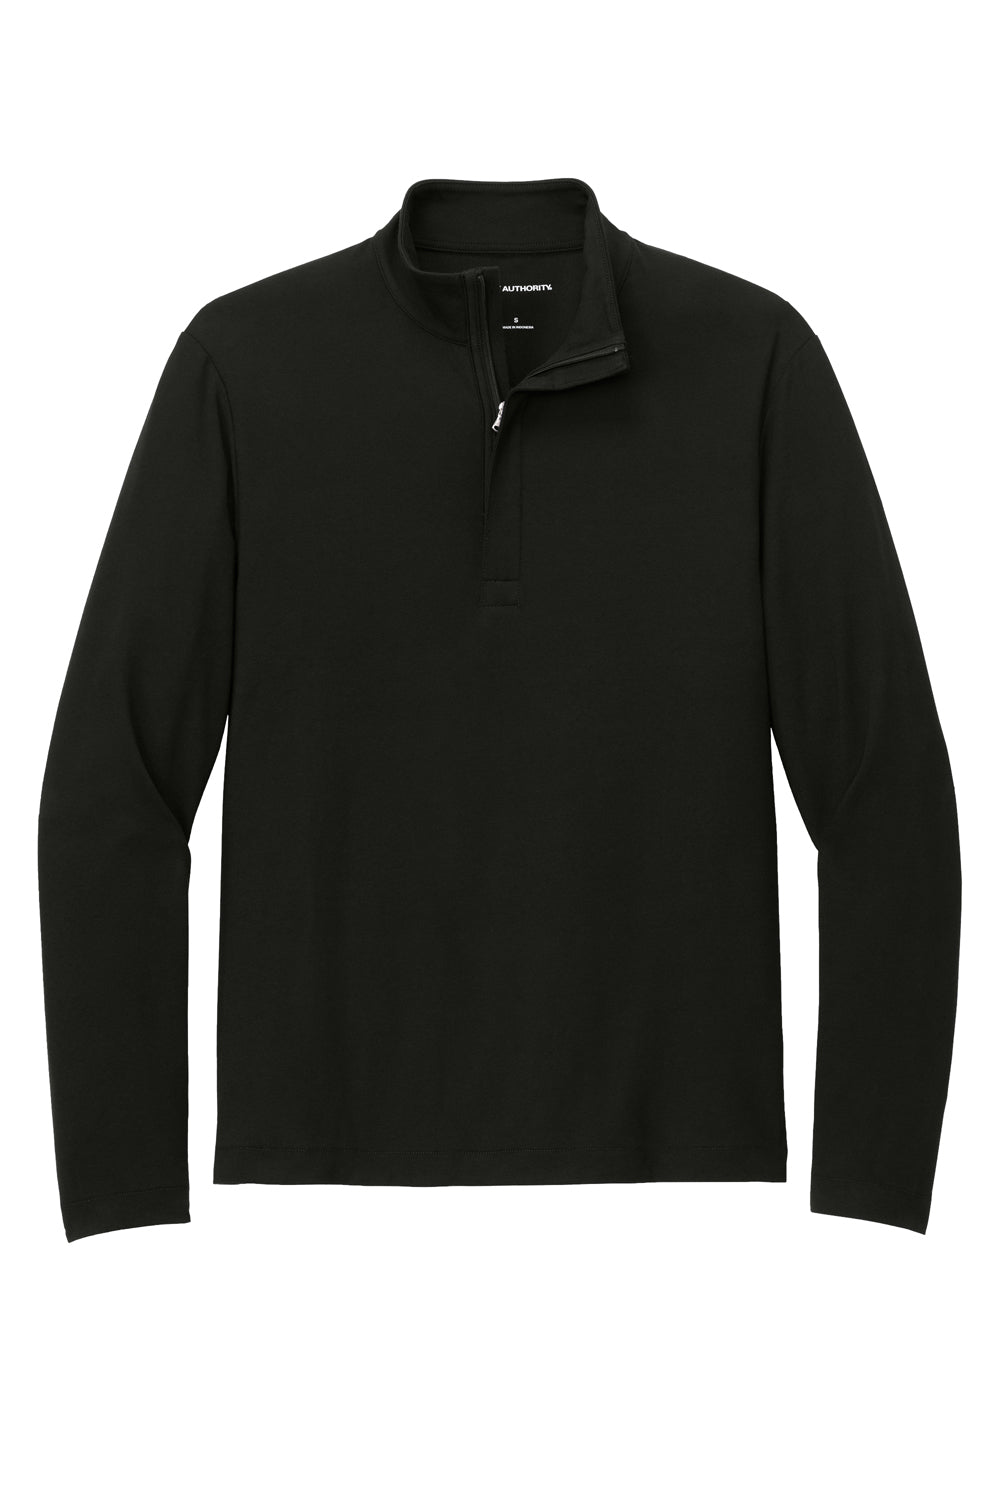 Port Authority Mens Fairway 1/4 Zip Sweatshirt Deep Black Flat Front